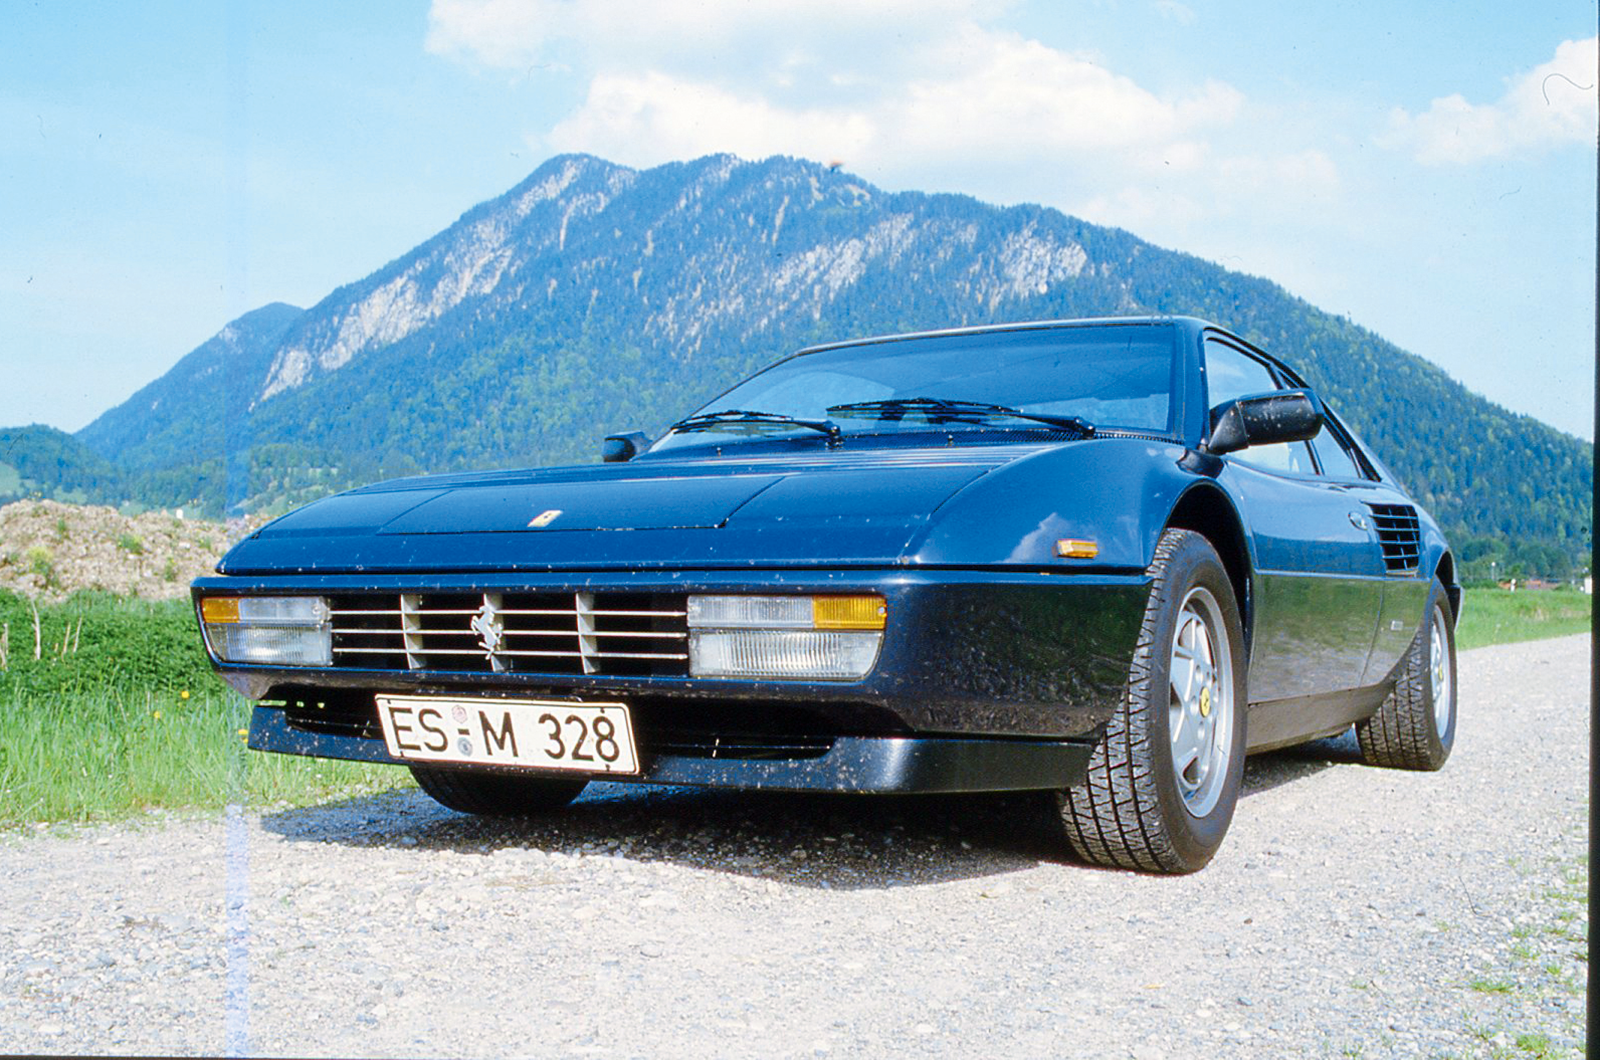 Classic & Sports Car – Buyer’s guide: Ferrari Mondial